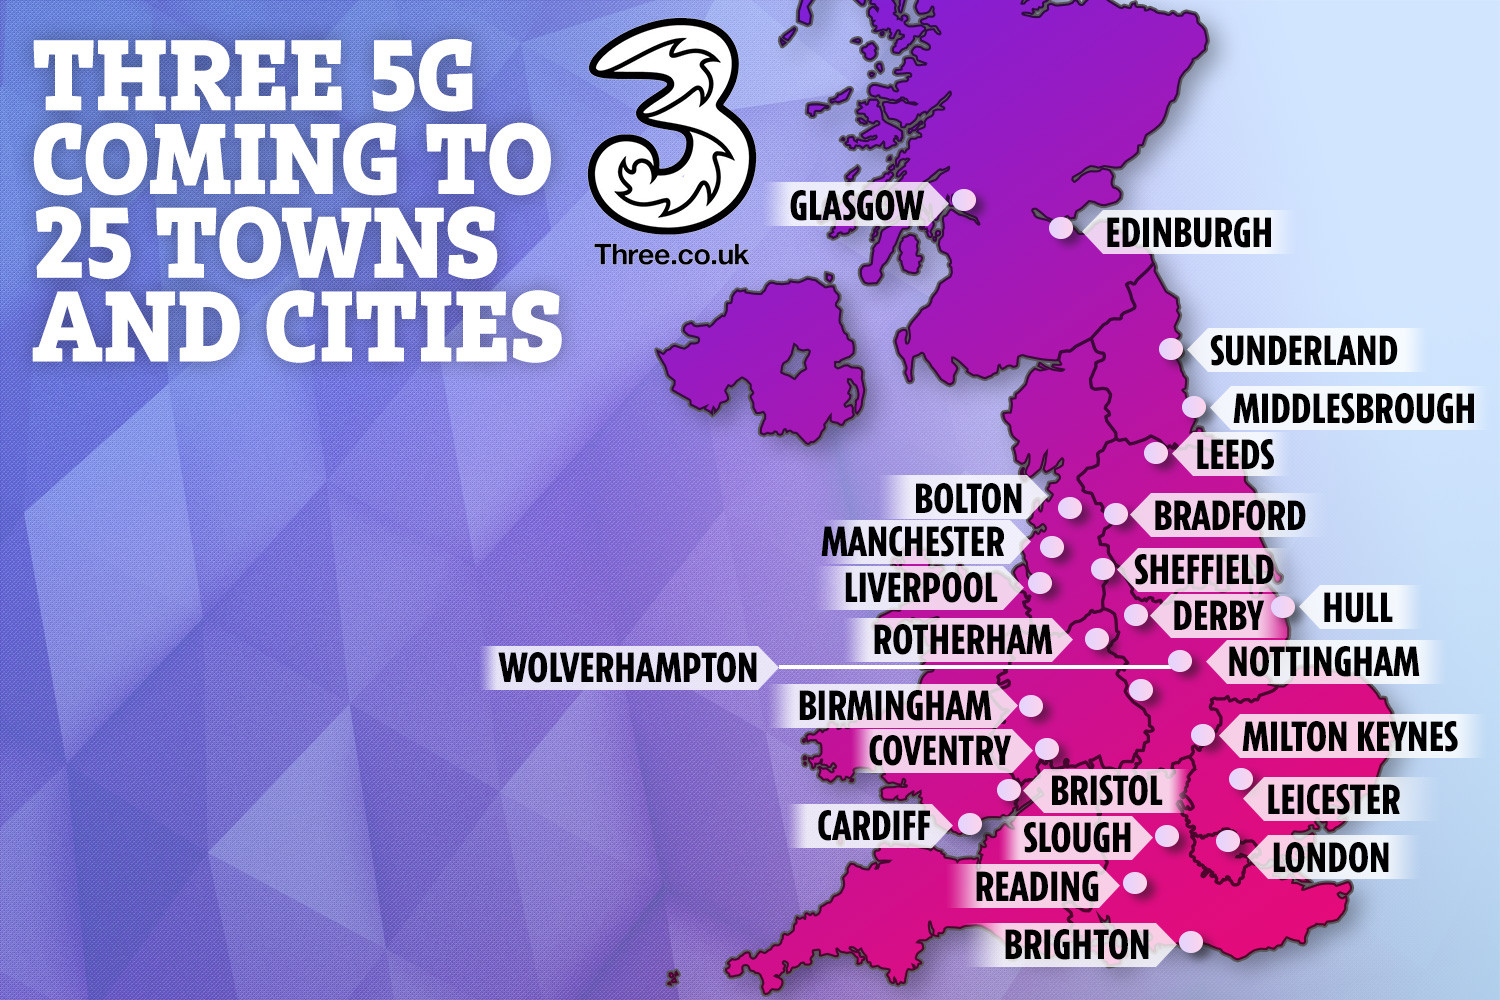     Hasta 25 ciudades en el Reino Unido tendrán acceso a la red 5G Three para fines de 2019